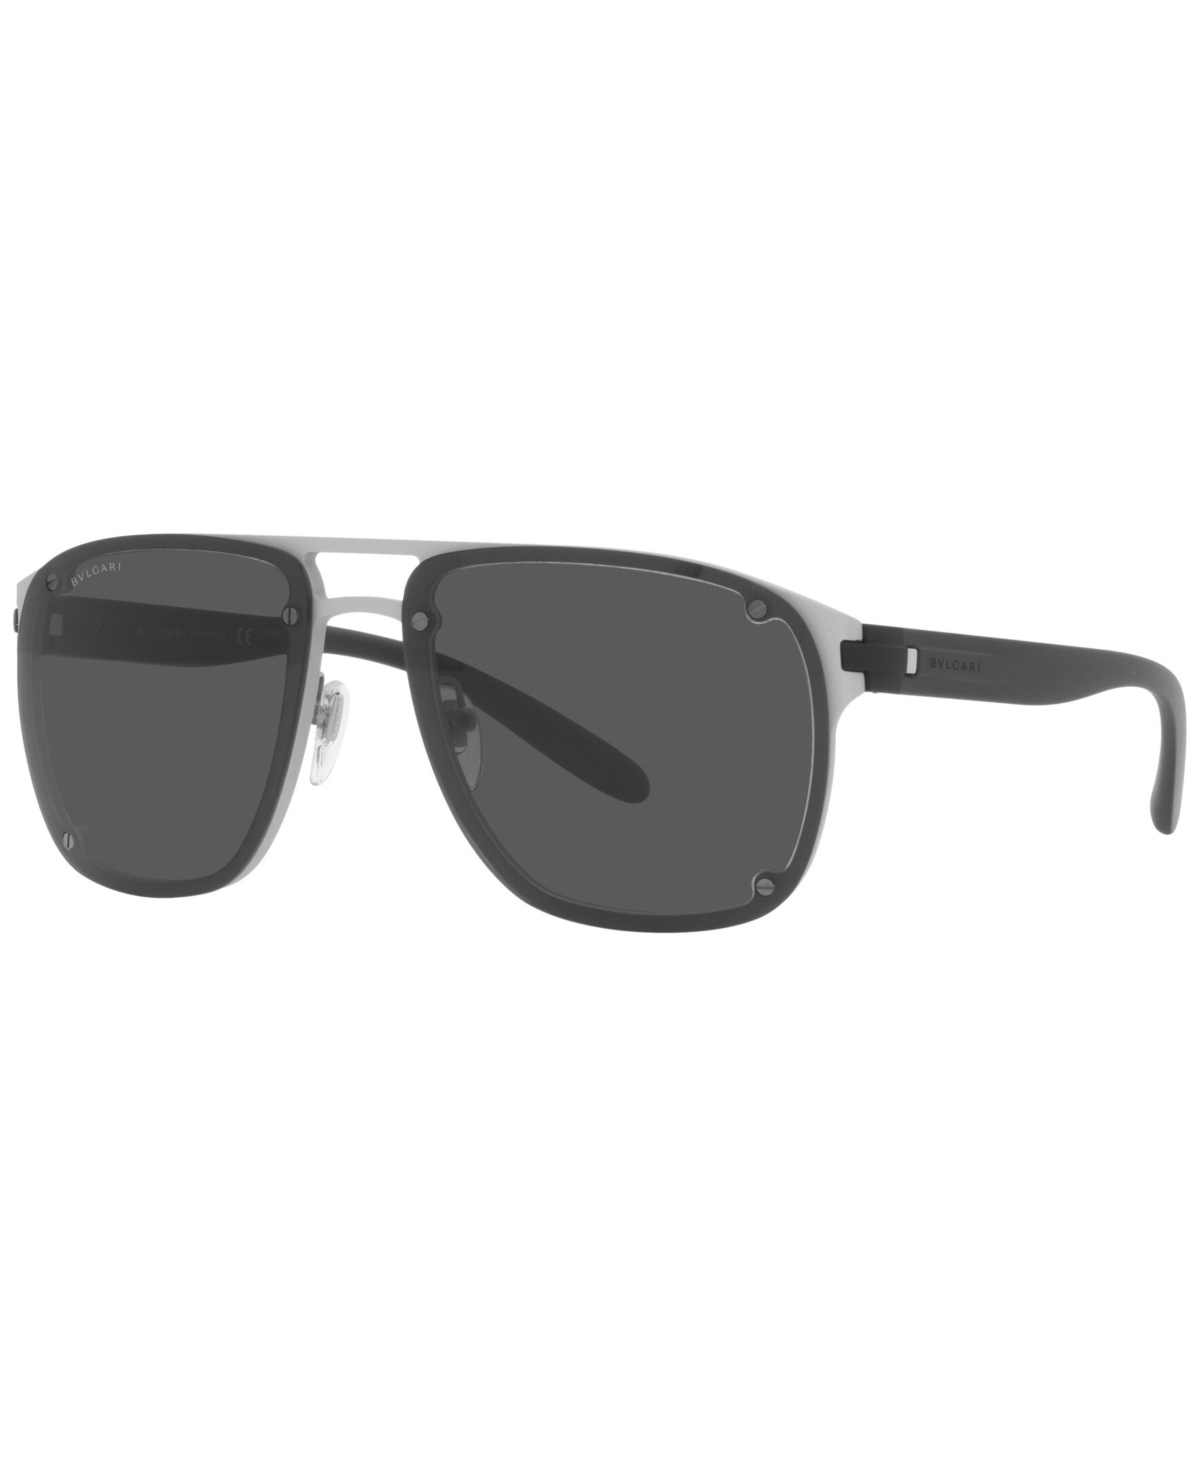 Bvlgari Men's Sunglasses, Bv5058 60 In Brown Alluminium/brown